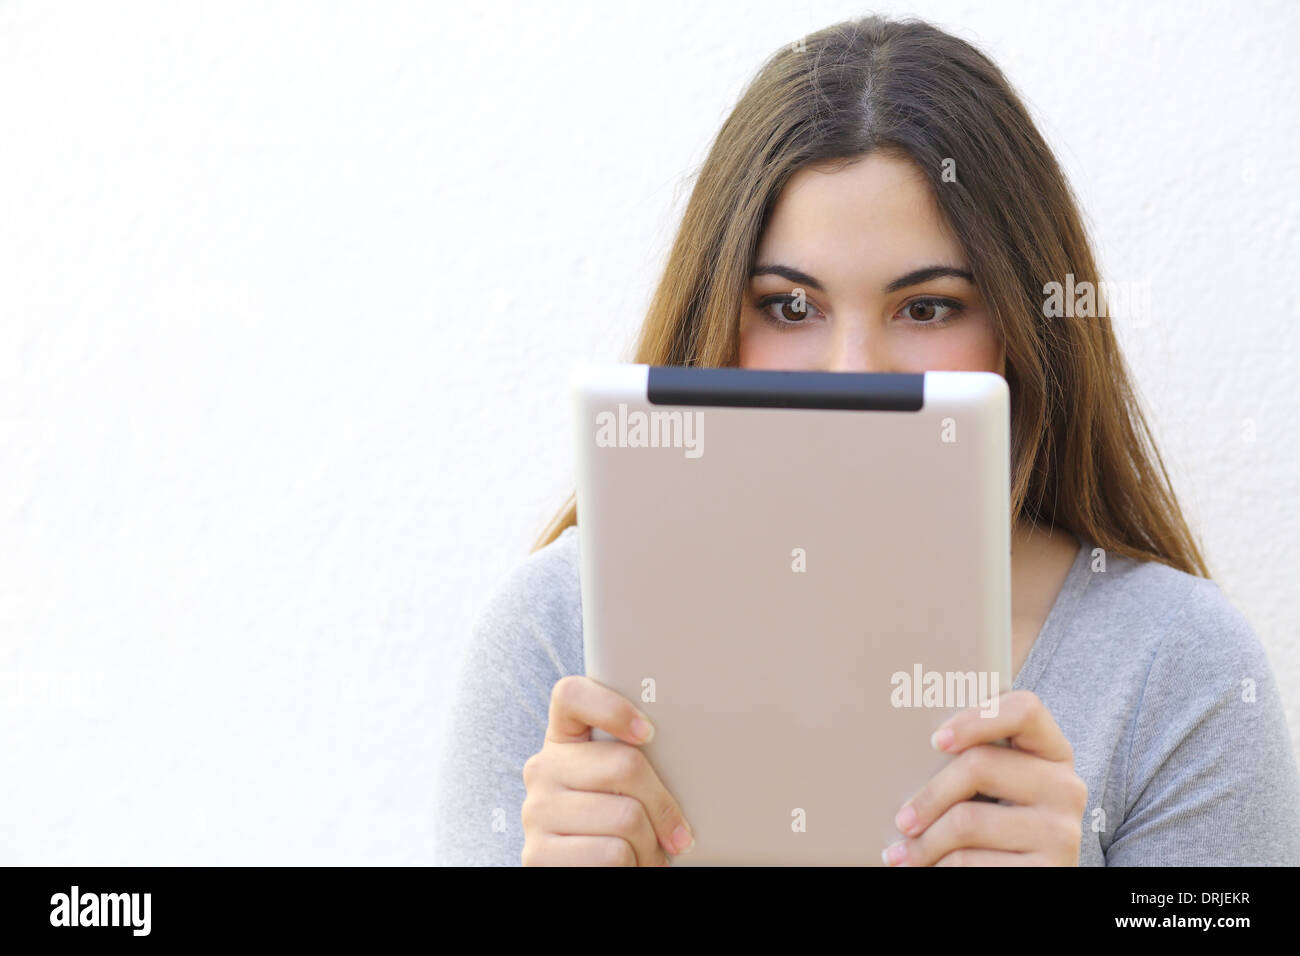 Internet-sucht-Frau liest einen Tablet-Reader auf eine weiße Wand-Hintergrund Stockfoto